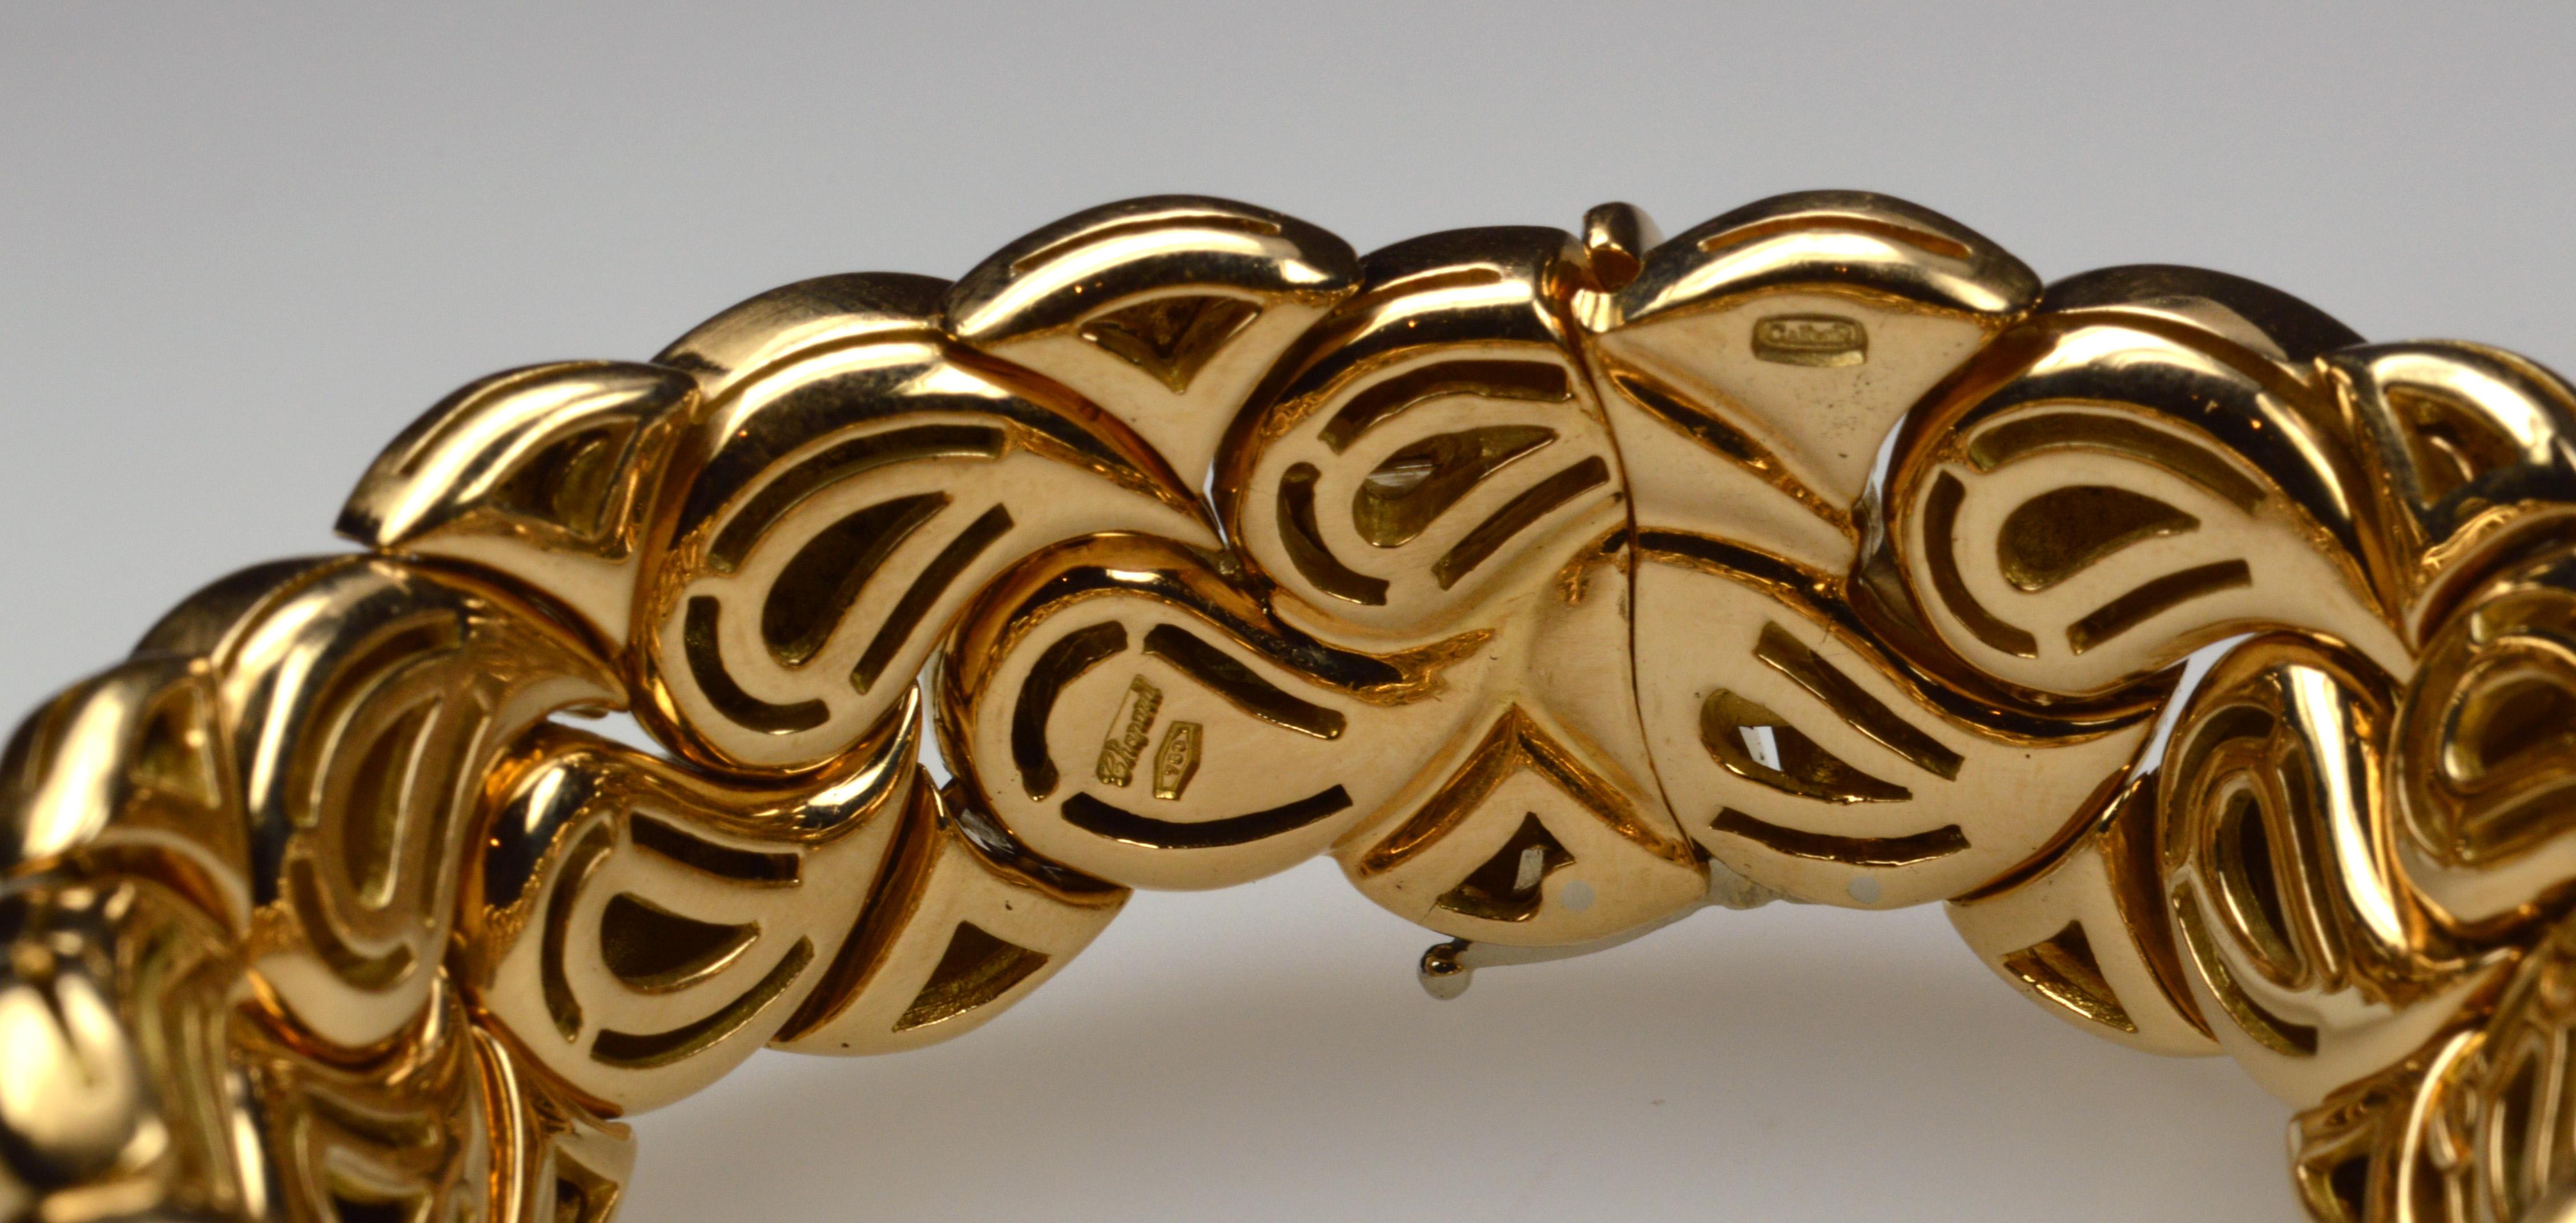 Chopard Casmir Gold Bracelet in 18K yellow gold
Signature: Chopard Casmir